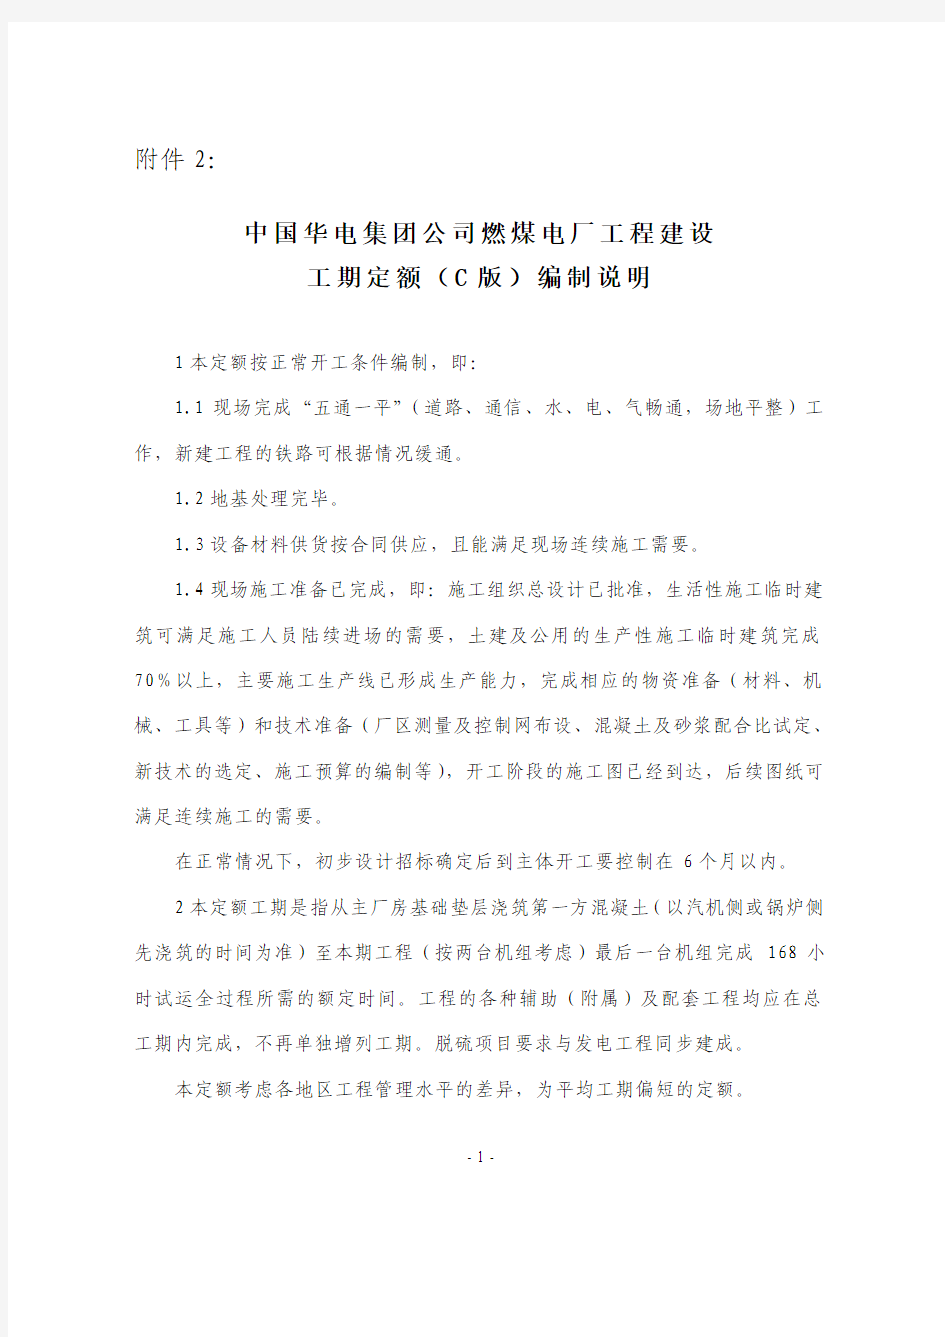 中国华电集团公司燃煤电厂工程建设工期定额(C版)编制说明